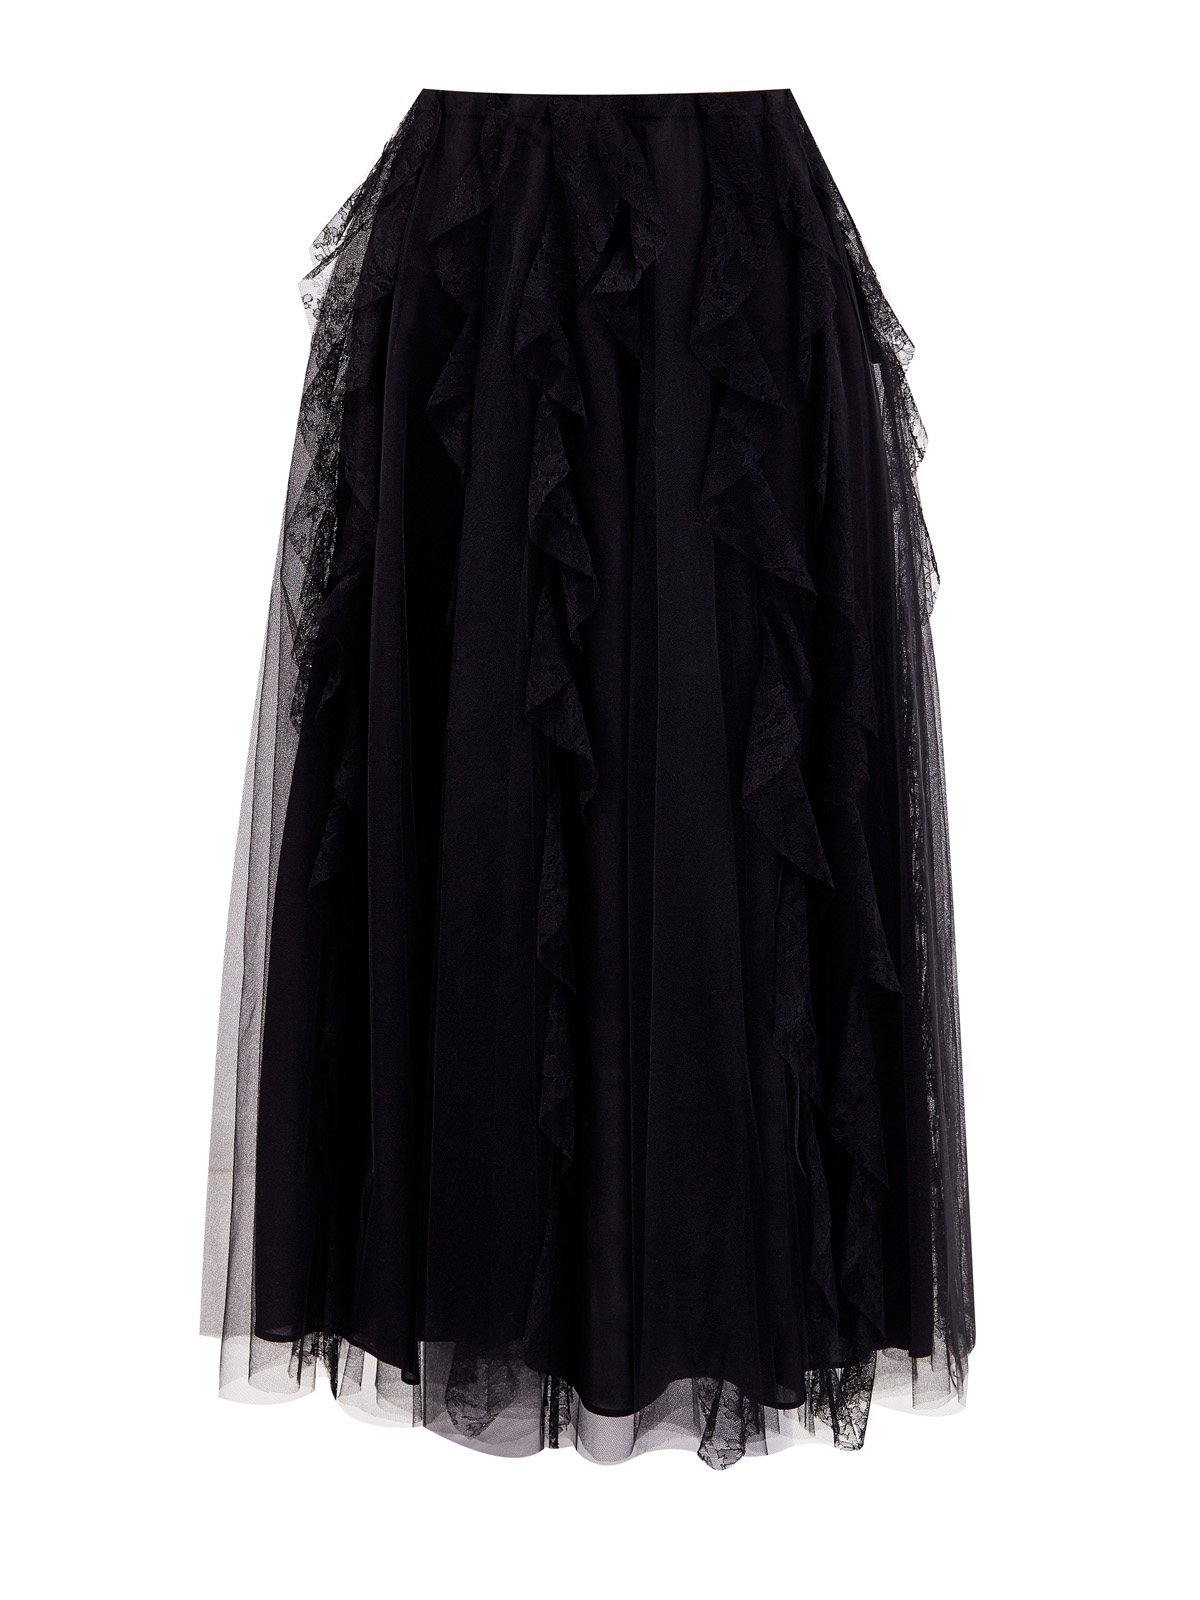 Многослойная юбка-плиссе с кружевным декором